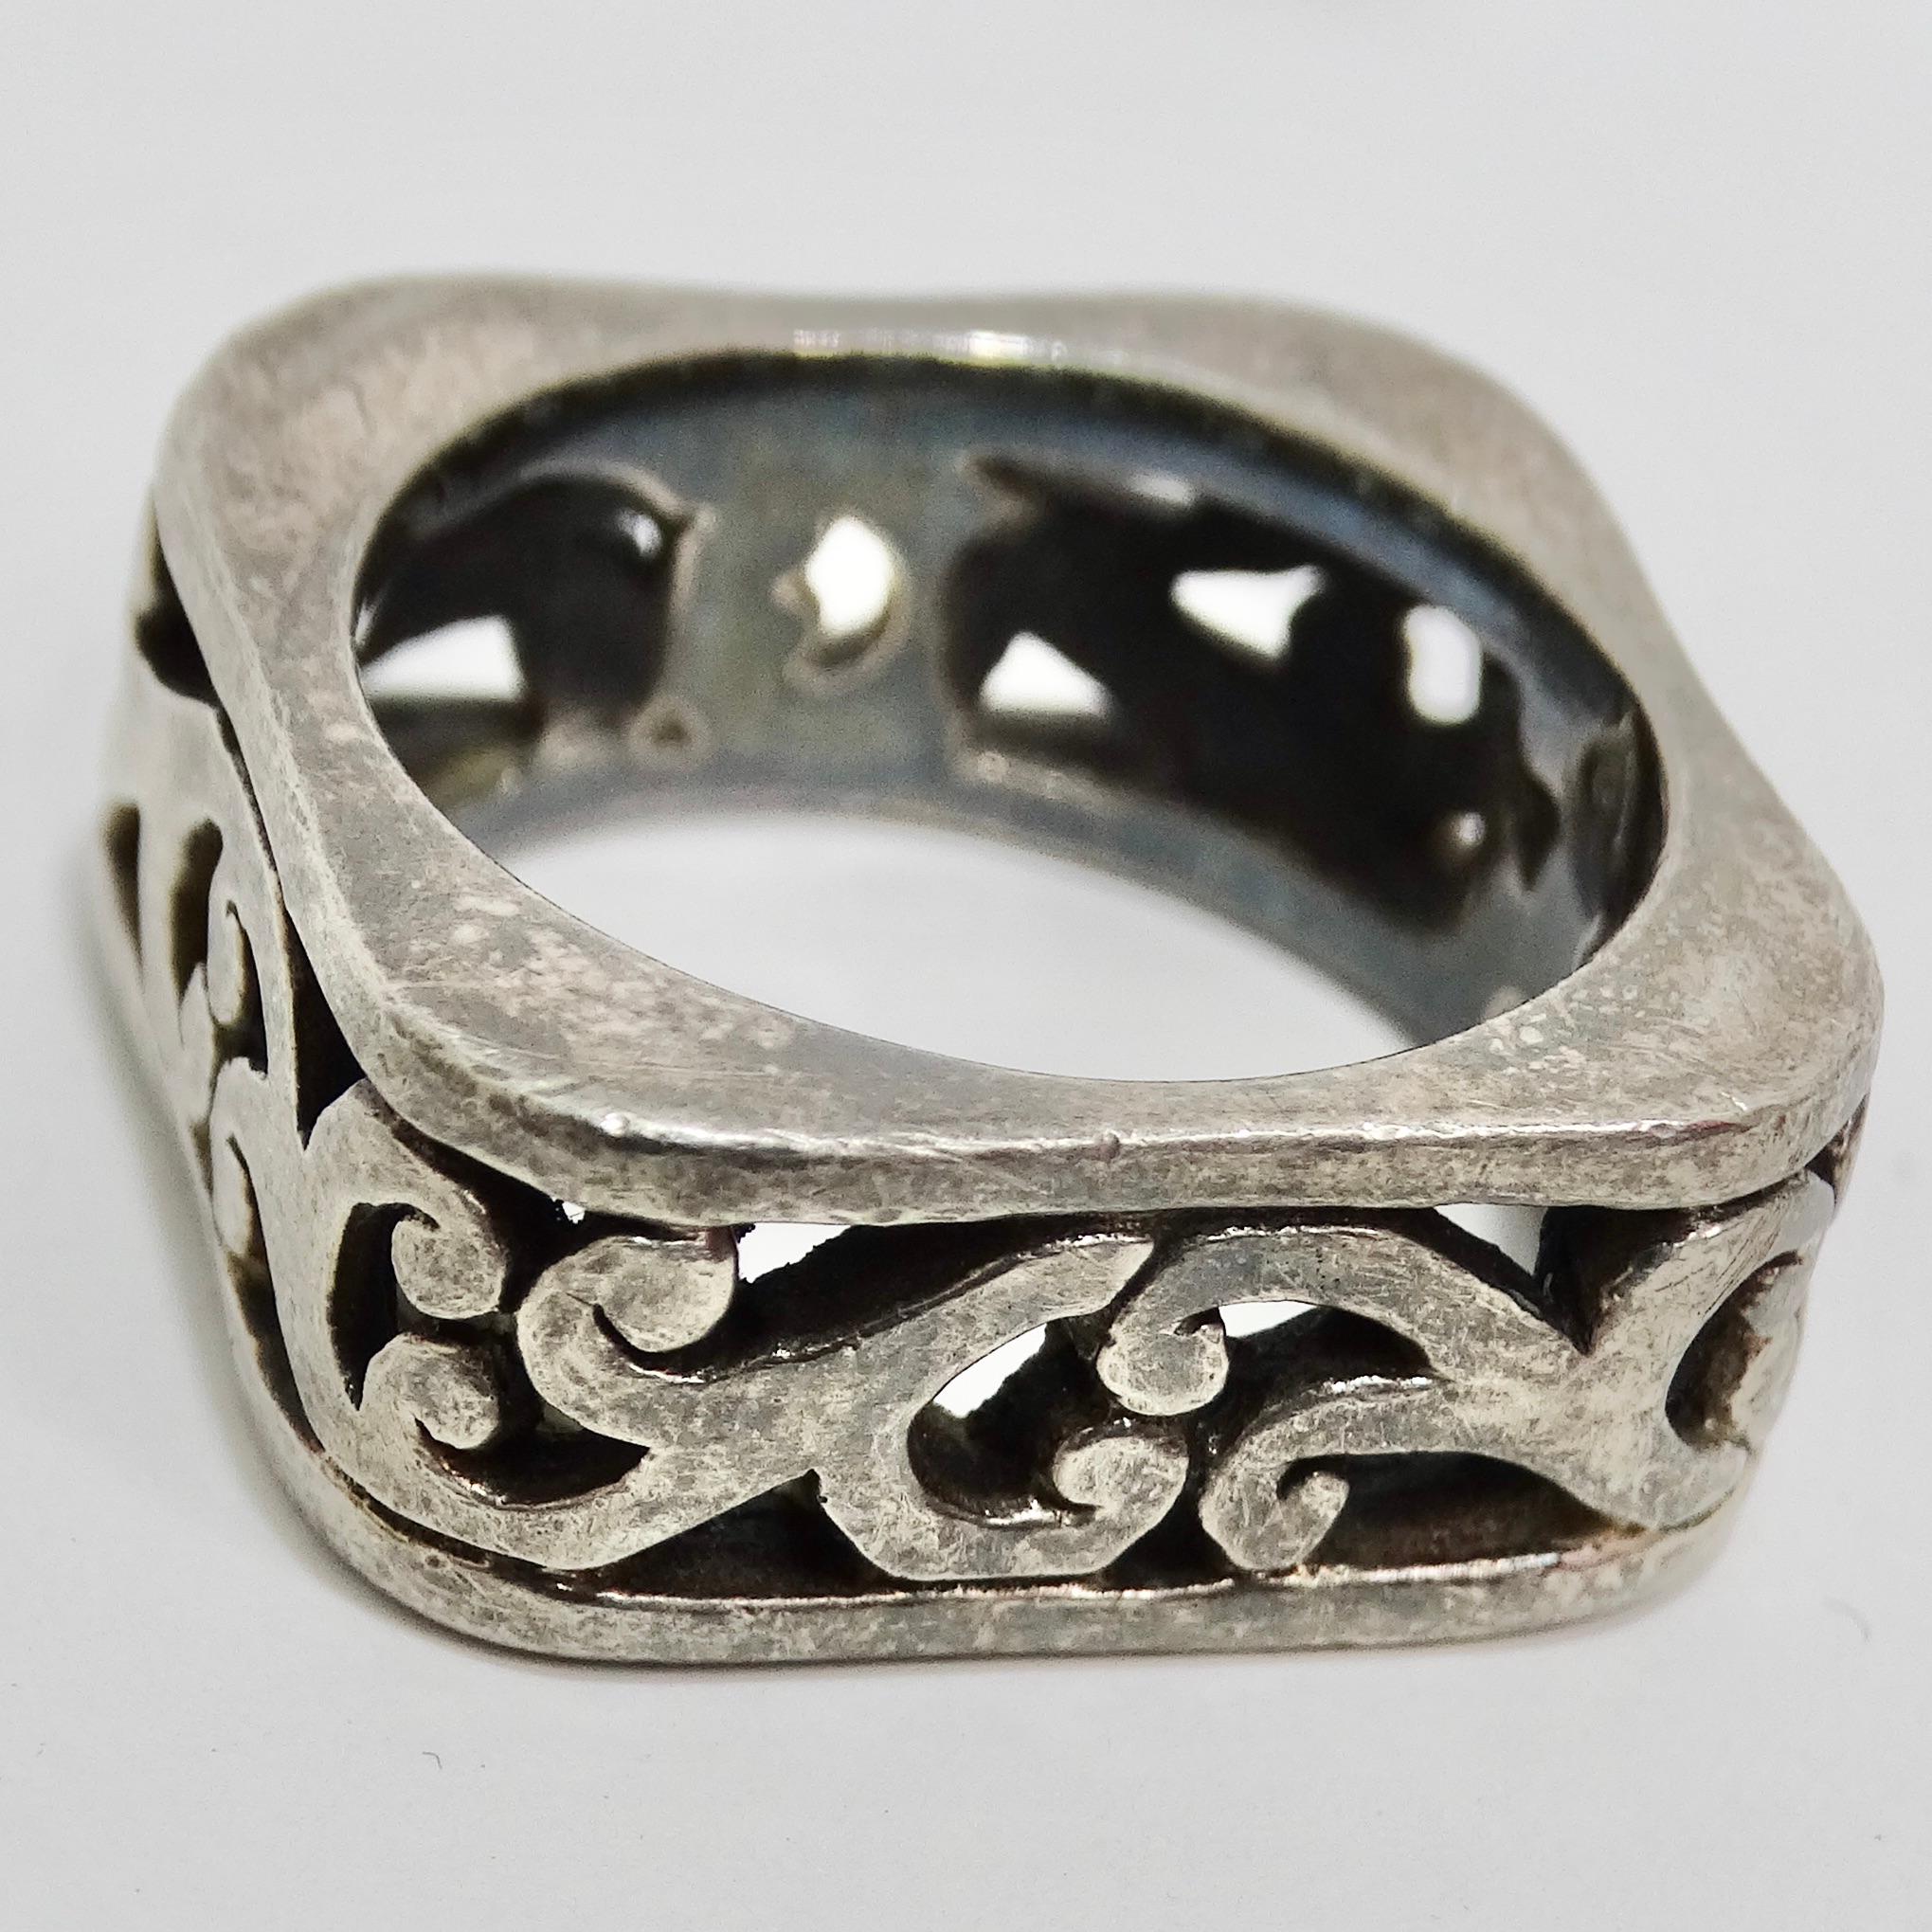 Der gravierte Silberring aus den 1970er Jahren - ein zeitloses Schmuckstück mit einem Hauch von Vintage-Allüren! Dieser Ring aus reinem Silber ist mit einer aufwendigen Barockgravur versehen, die ihn zu einem unverwechselbaren Schmuckstück macht,